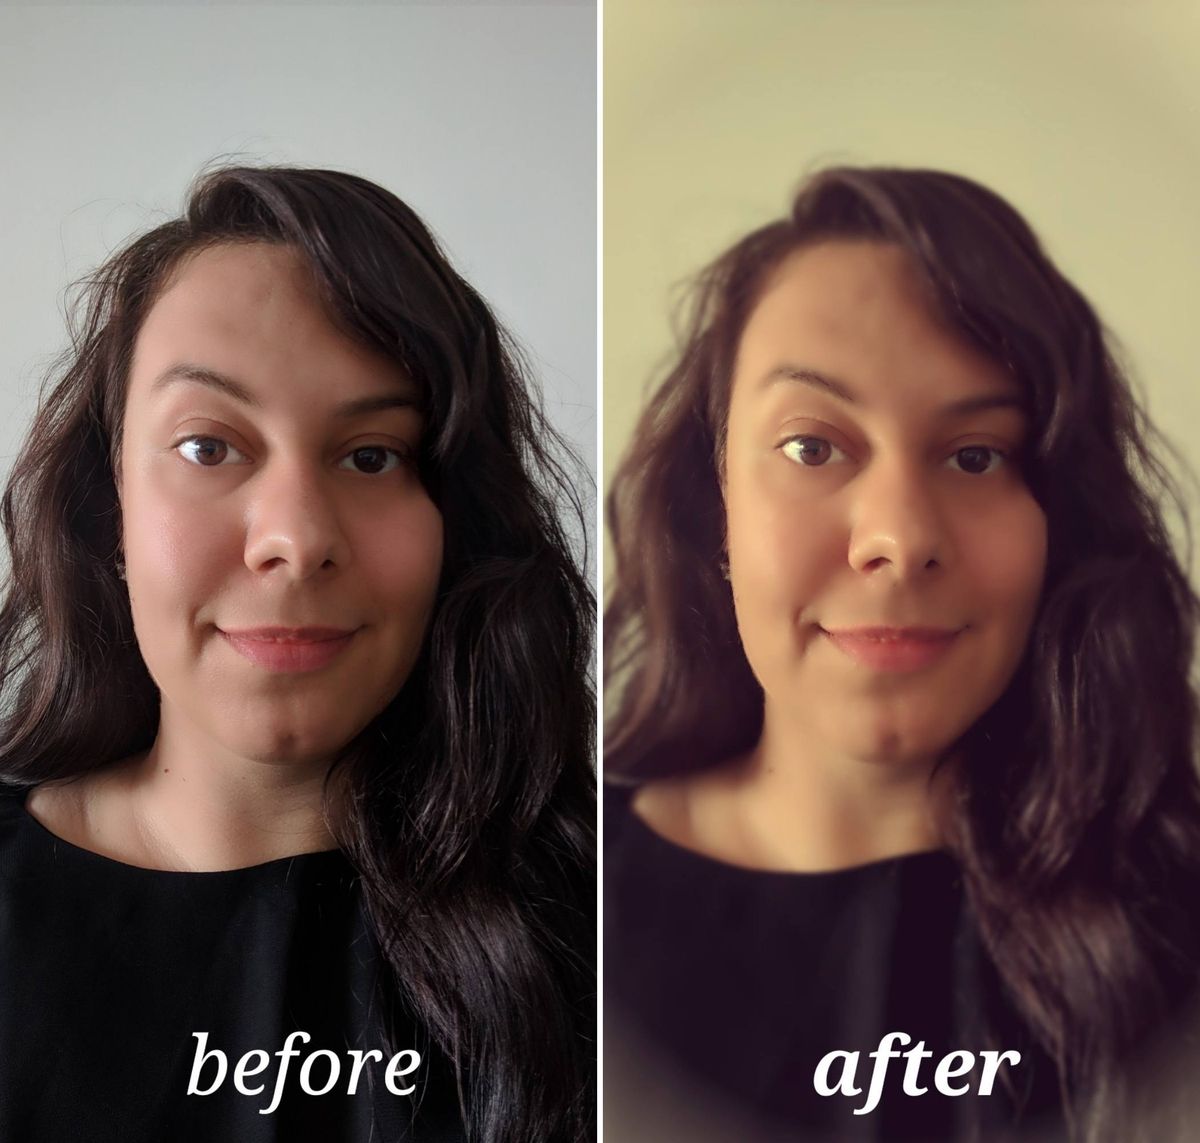 Pixlr enne ja pärast redigeerimist